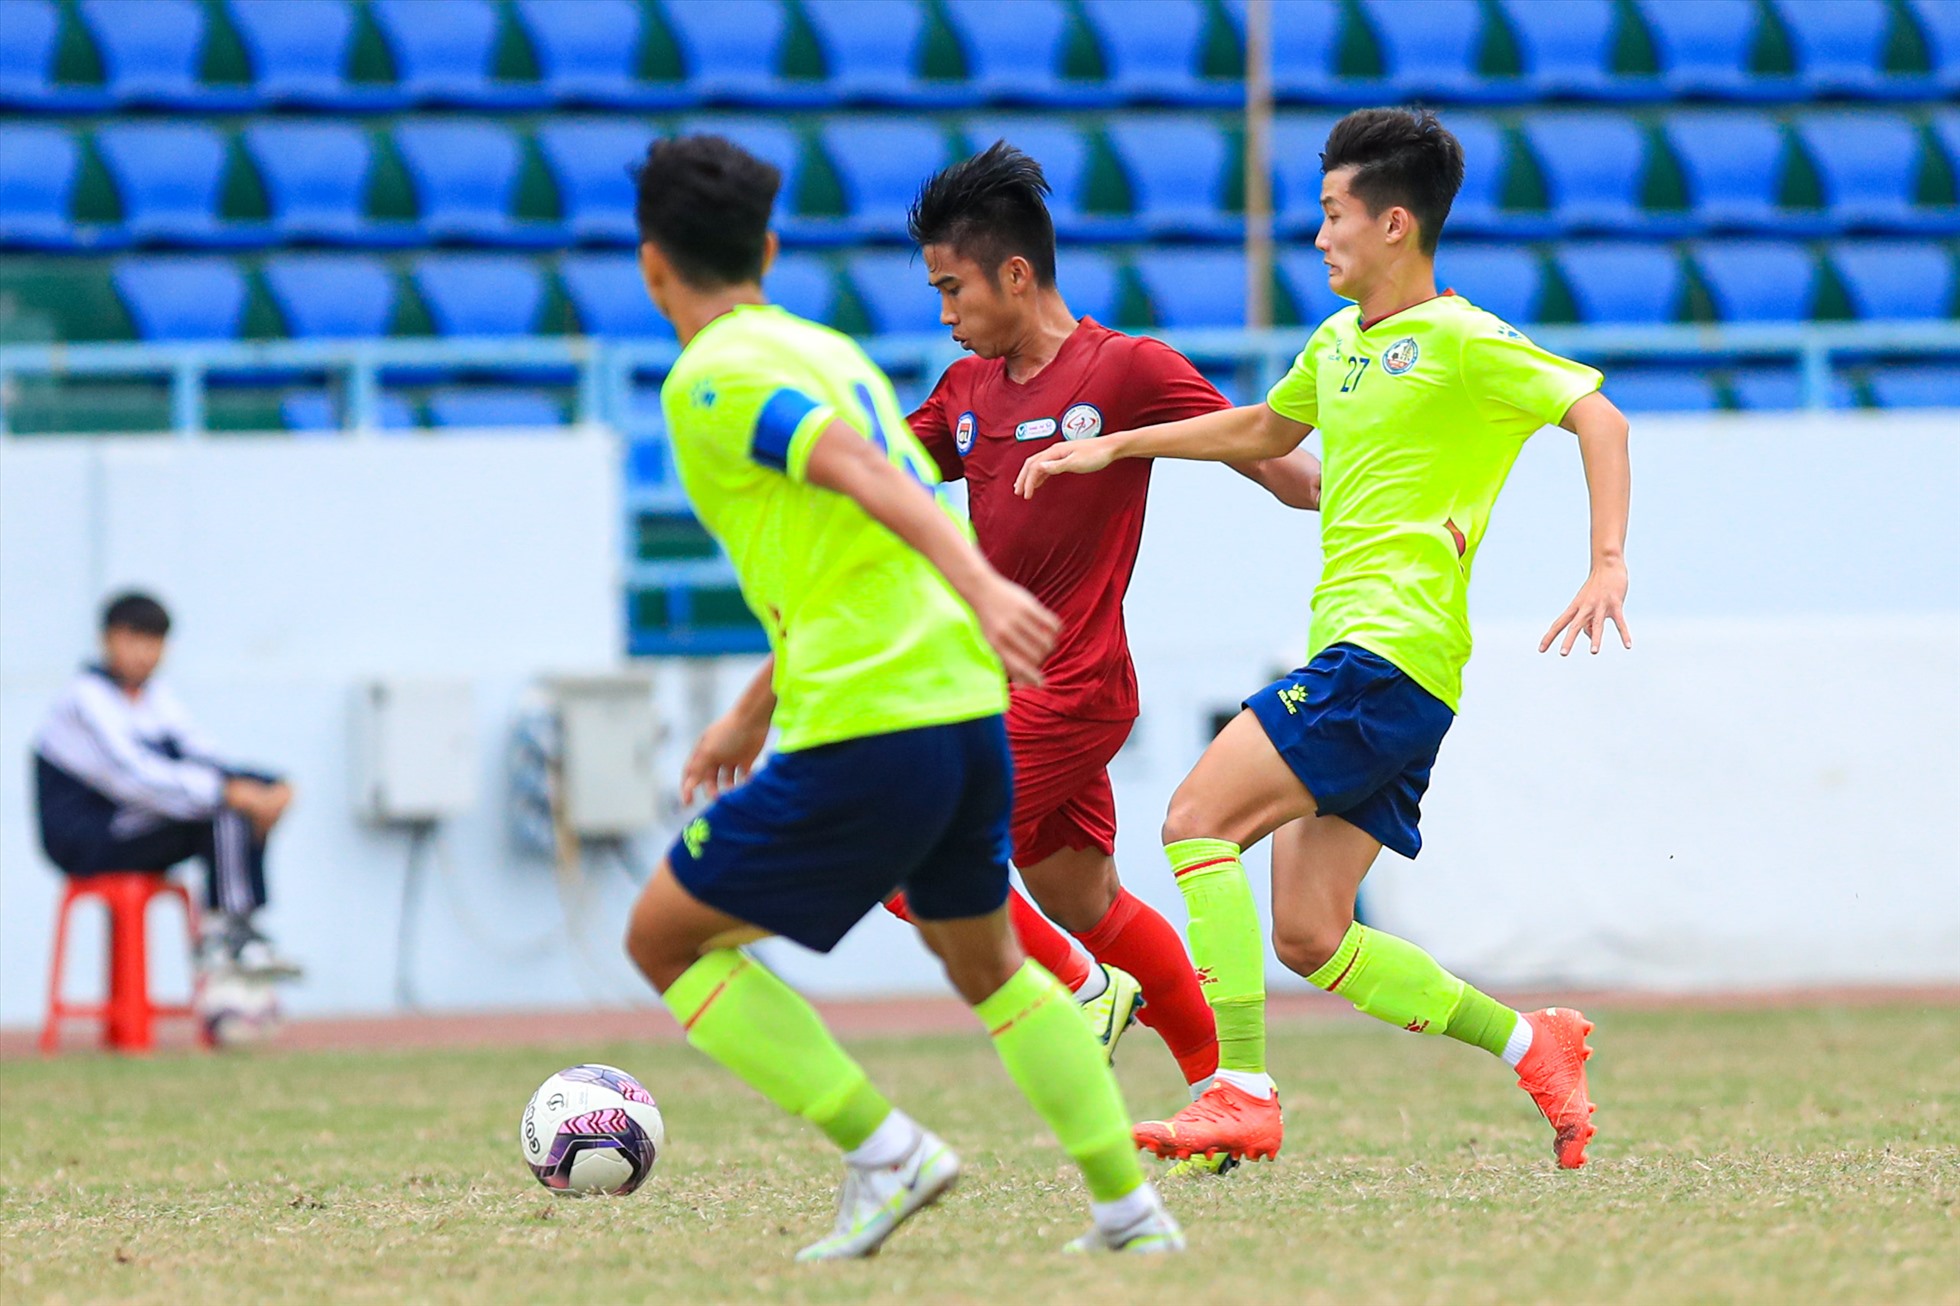 Ở trận tranh hạng Ba Đại hội Thể thao toàn quốc lần thứ IX, phút 30, cầu thủ Nguyễn Văn Mạnh sau tình huống dứt điểm đã tiếp đất không đúng tư thế.